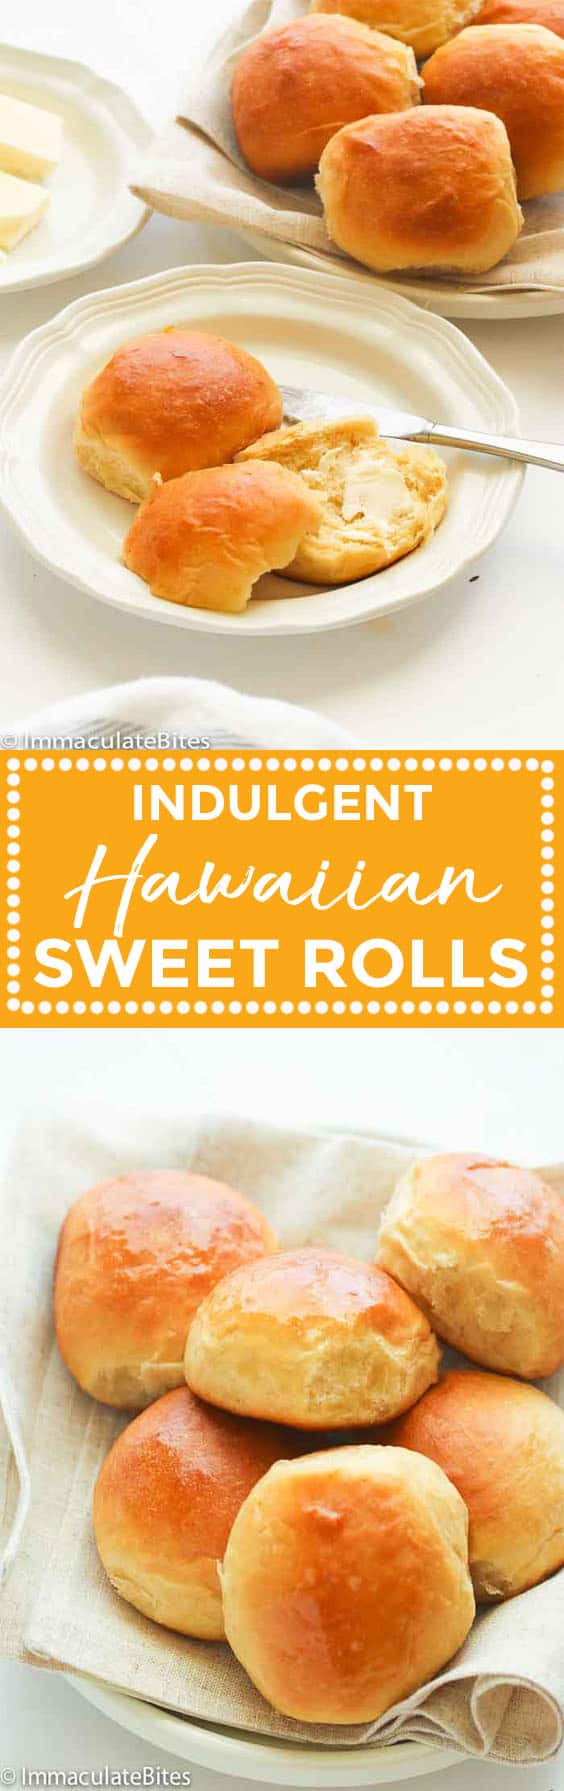 Hawaiian Sweet Rolls